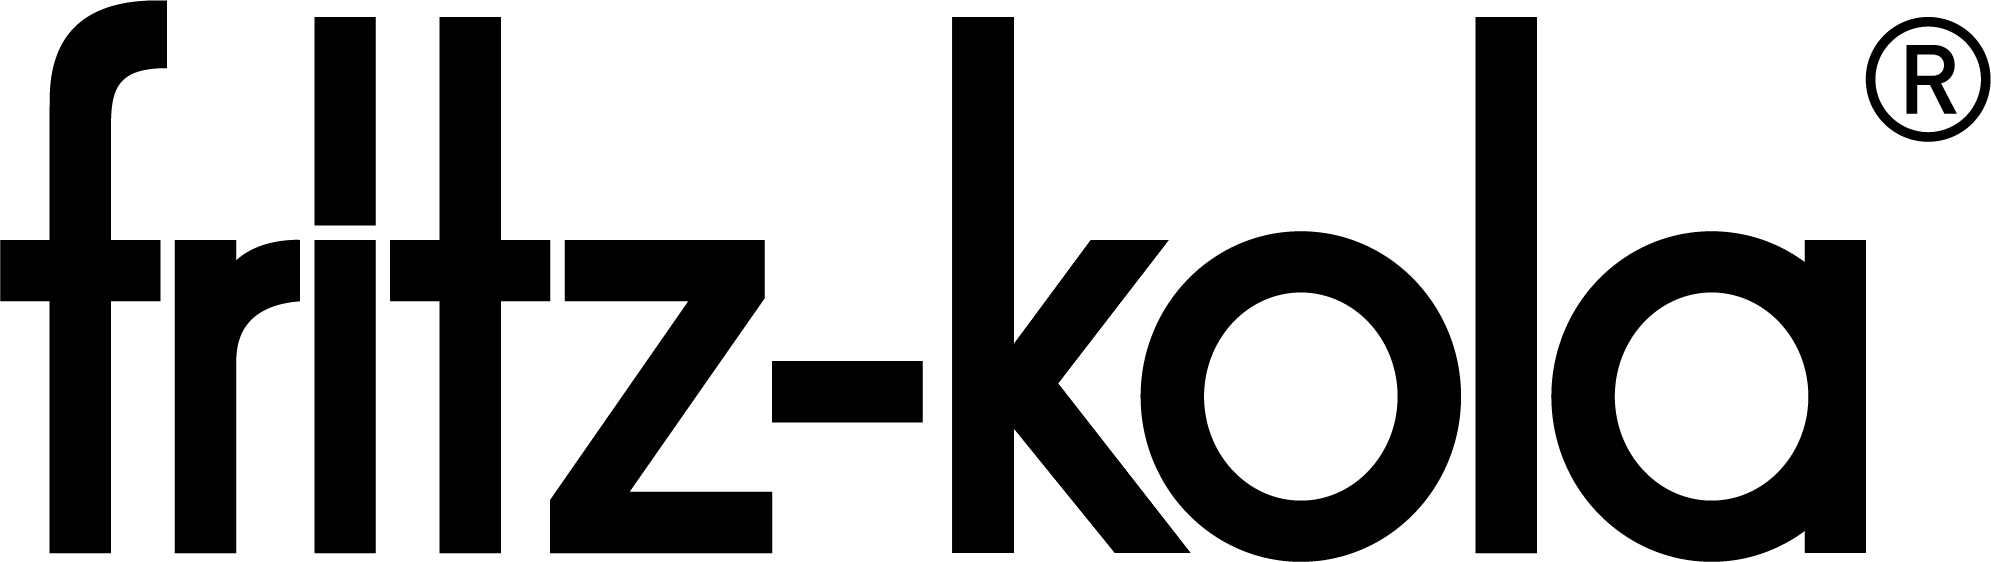 Wiesenstein Speisenmeisterei Logo fritz kola